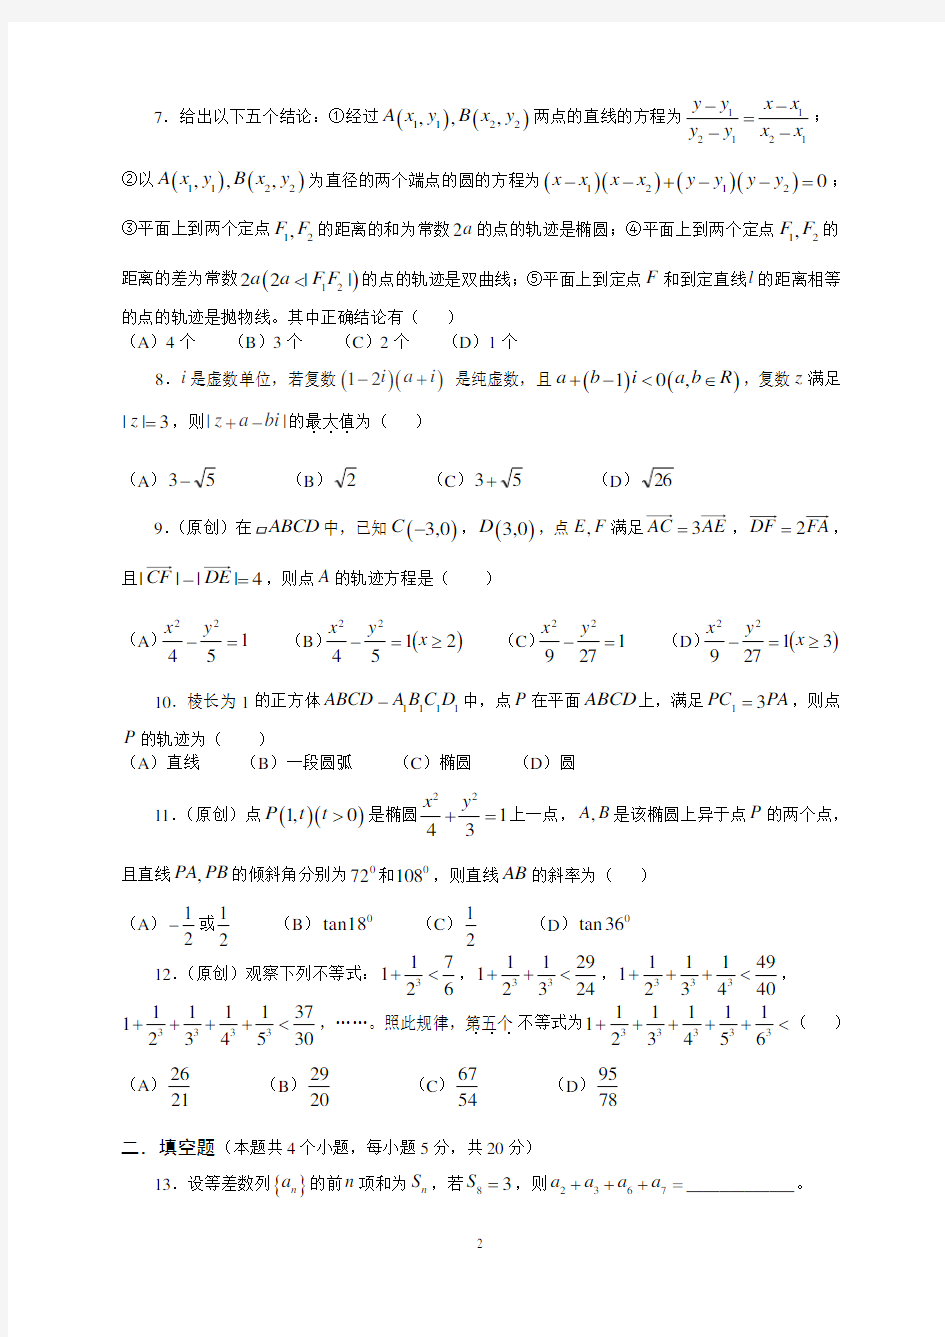 2016年重庆一中高2017级高二上期期末考试数学(理科)及答案